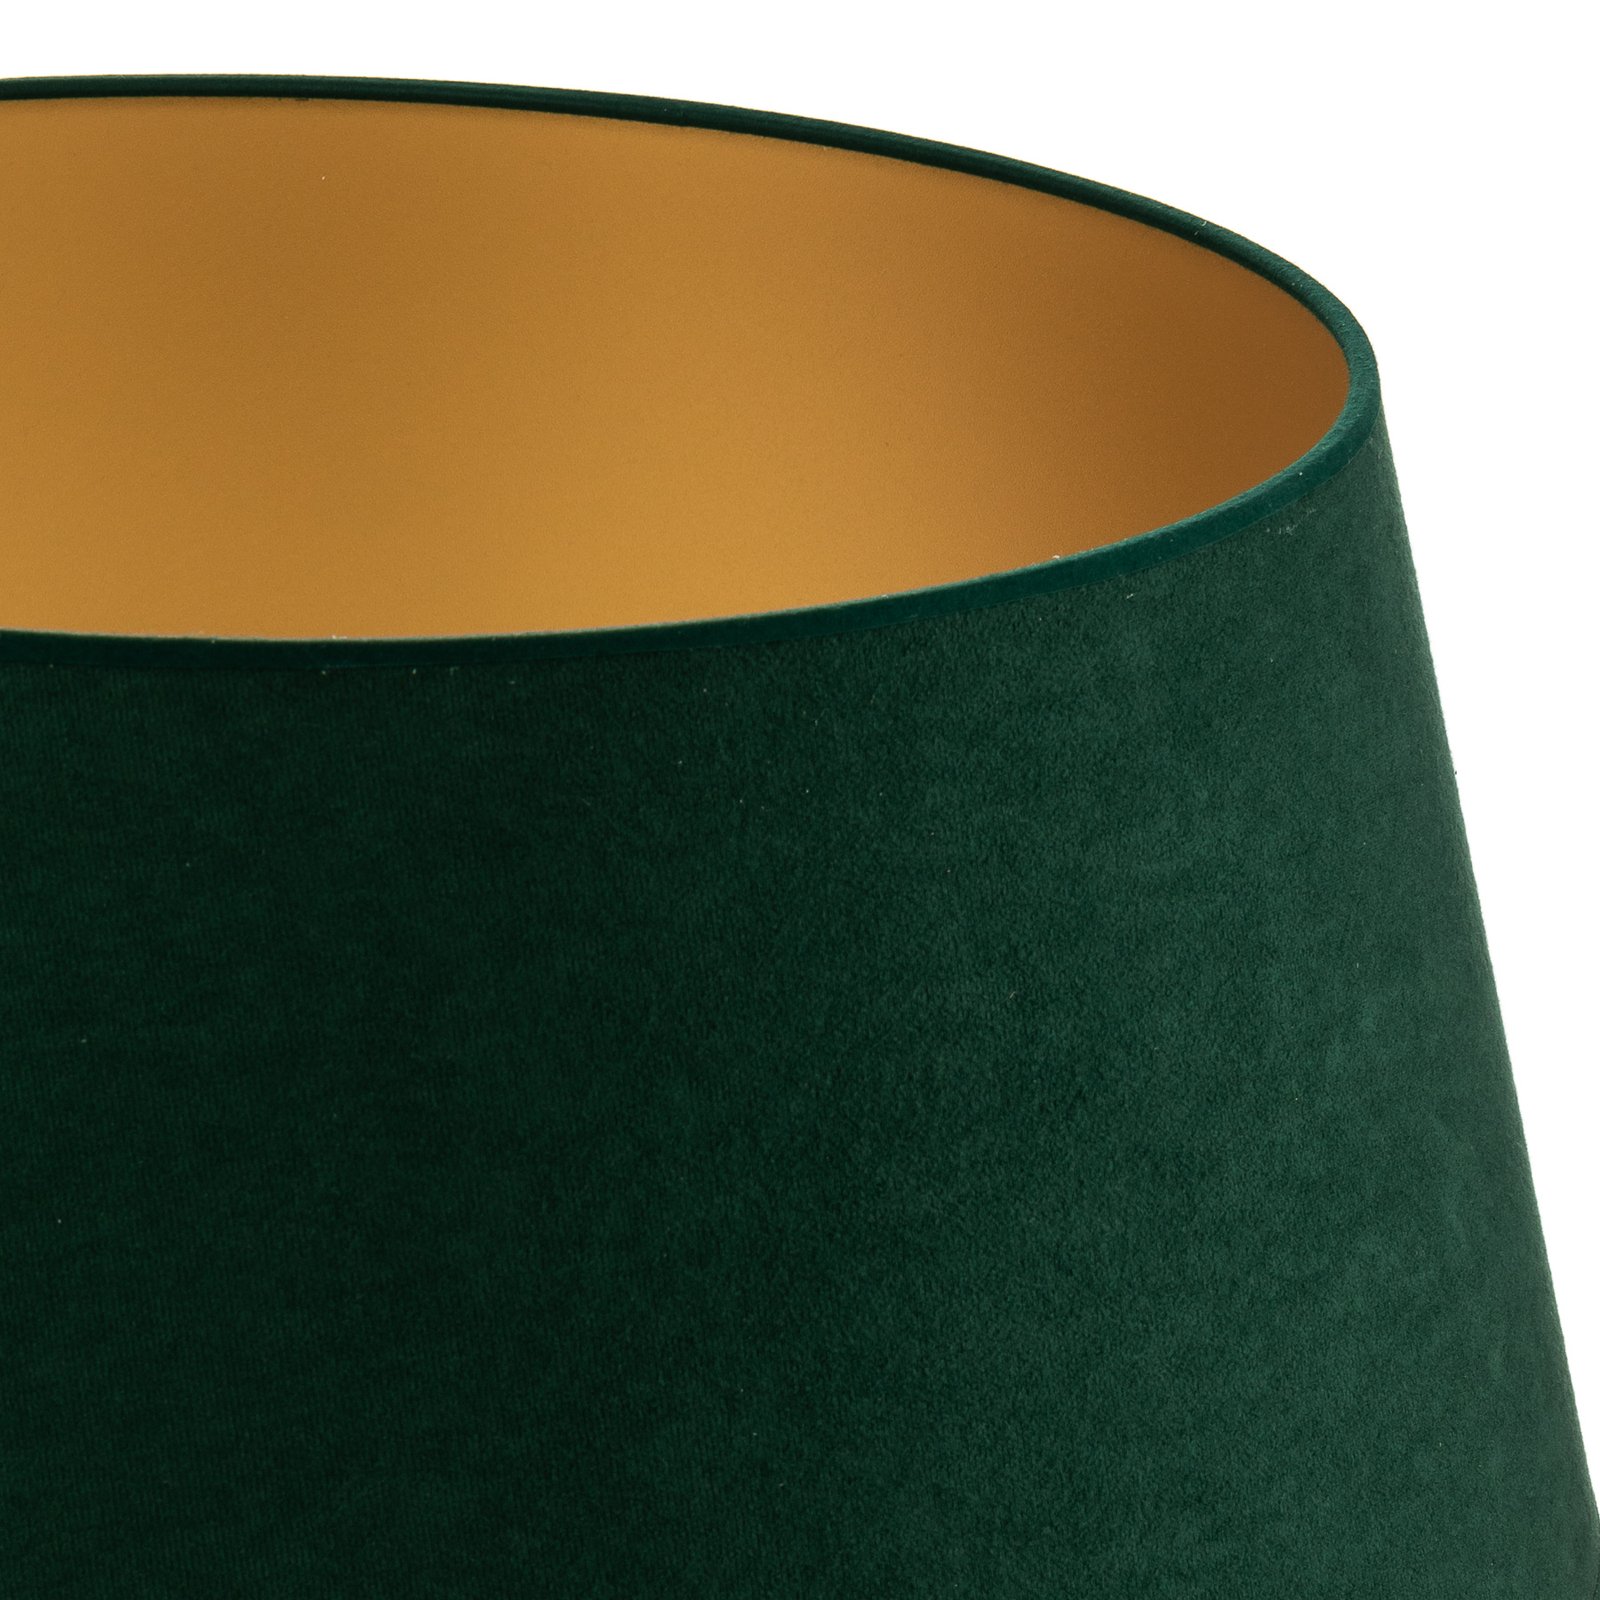 Cone lámpaernyő 25,5 cm magas, sötétzöld/arany